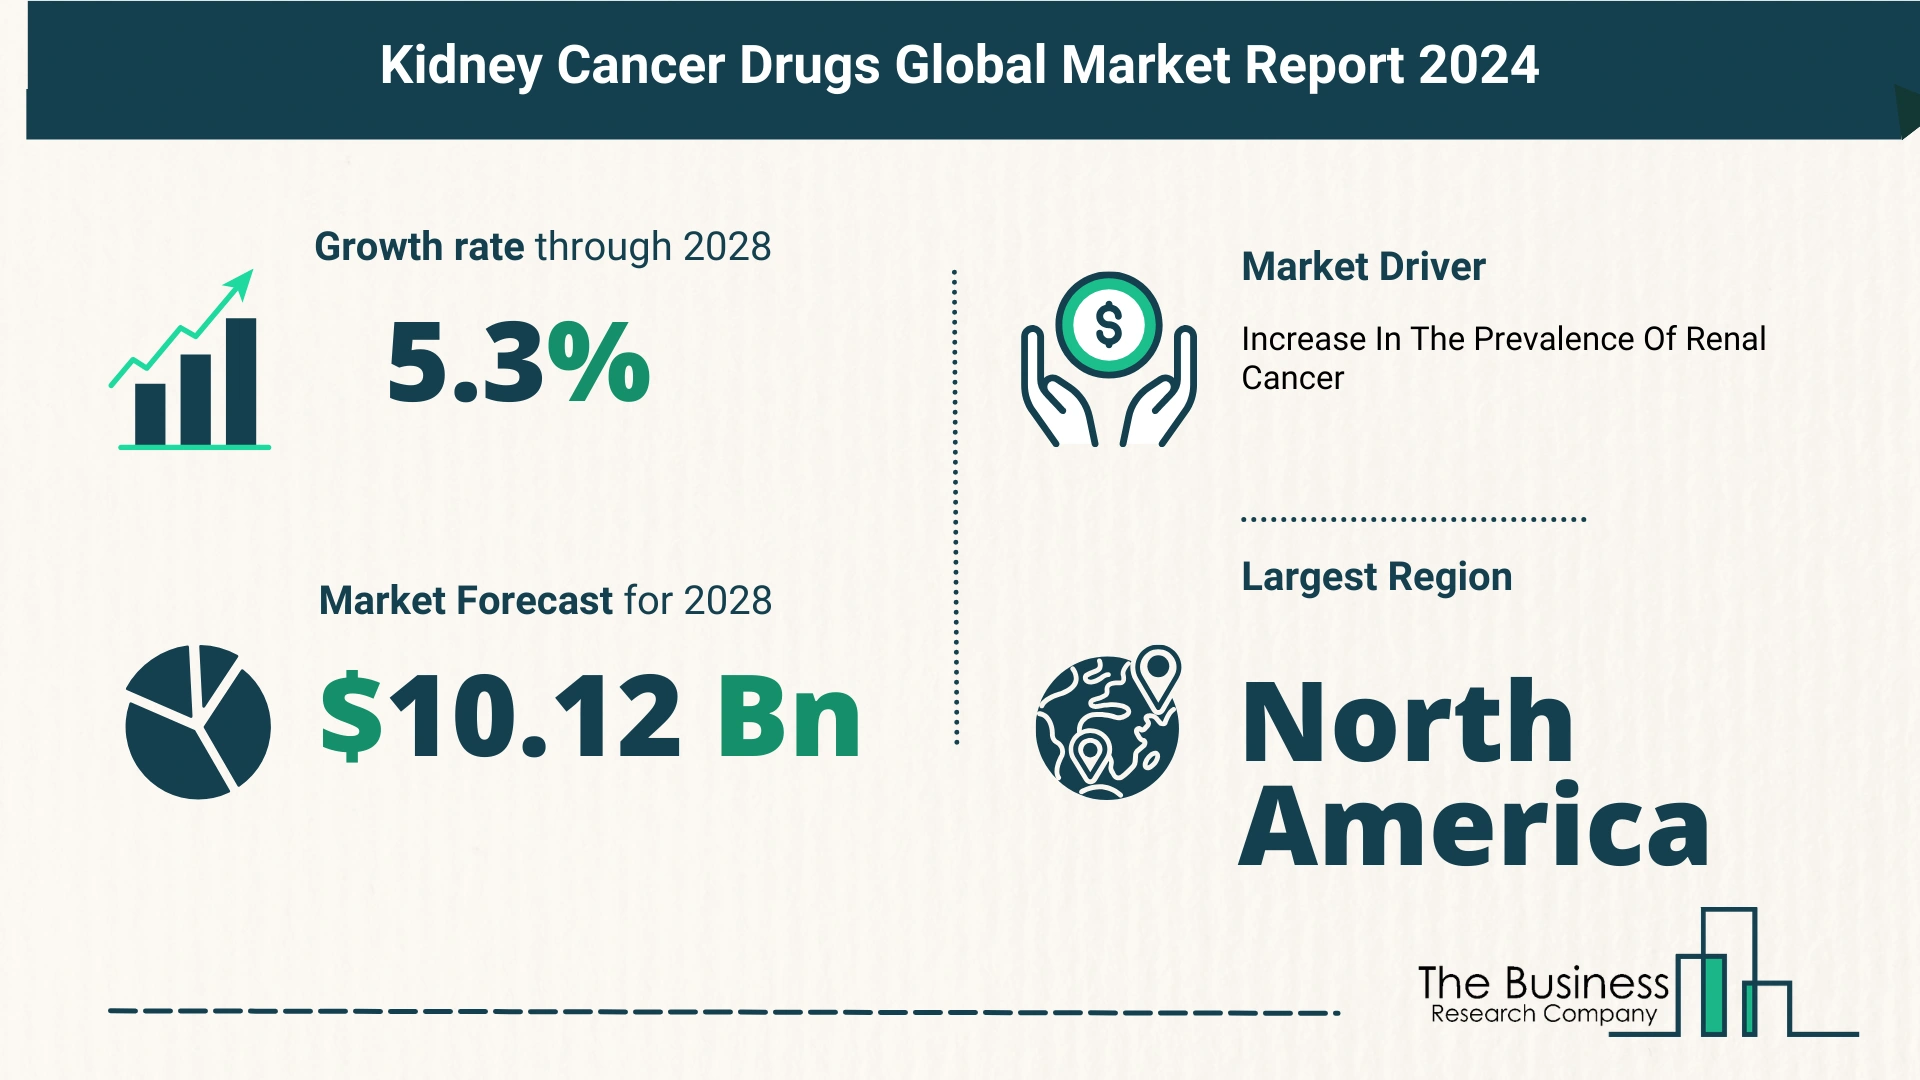 Global Kidney Cancer Drugs Market Size